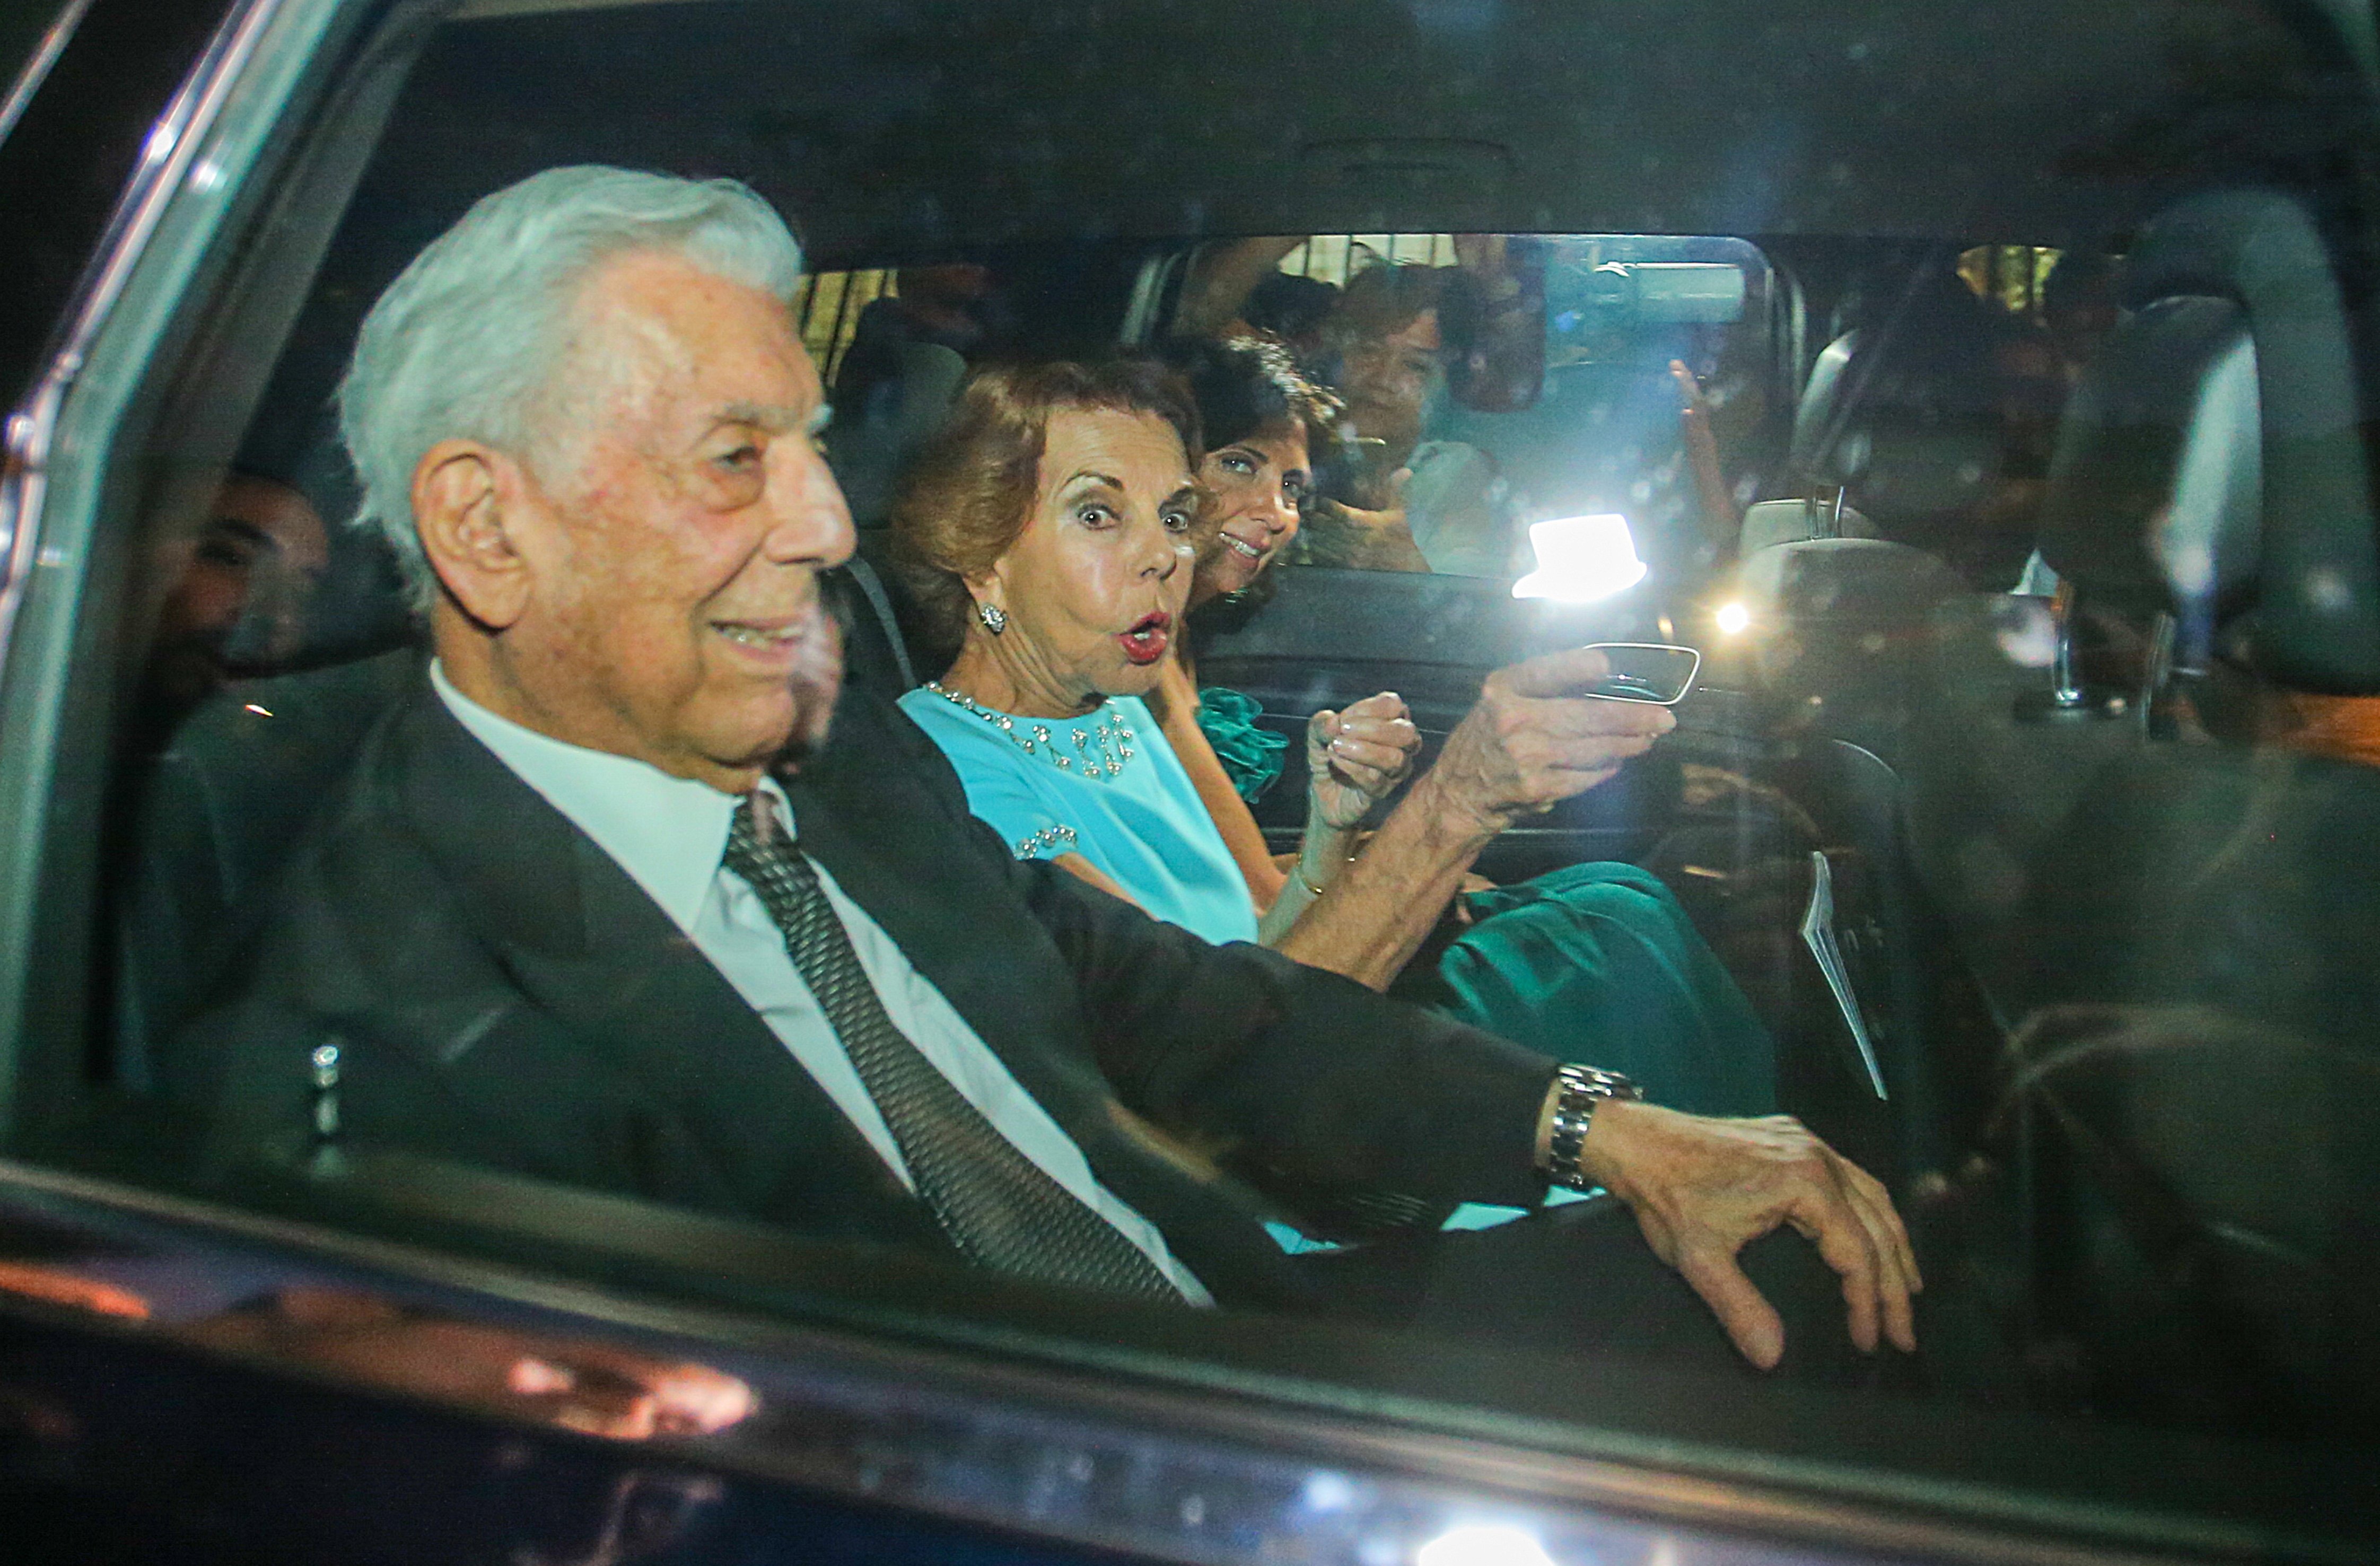 Vargas Llosa escandalitza el personal. Imatge "políticamente incorrecta" amb Patricia, el fill els enxampa